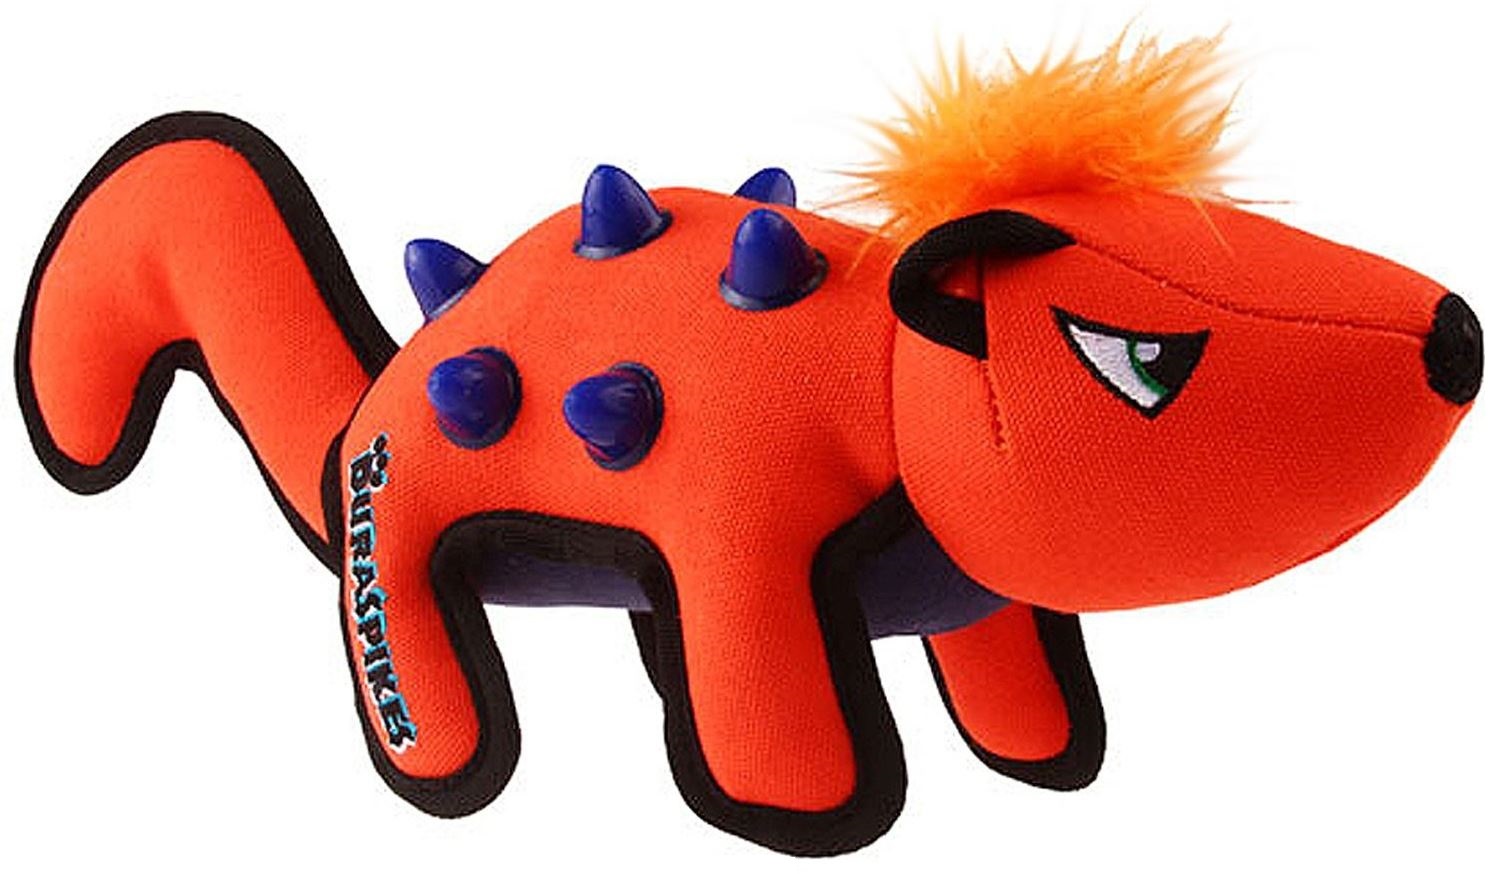 Мягкая игрушка для собак GiGwi Дюраспайк-Енот, оранжевый, синий, черный, длина 36 см